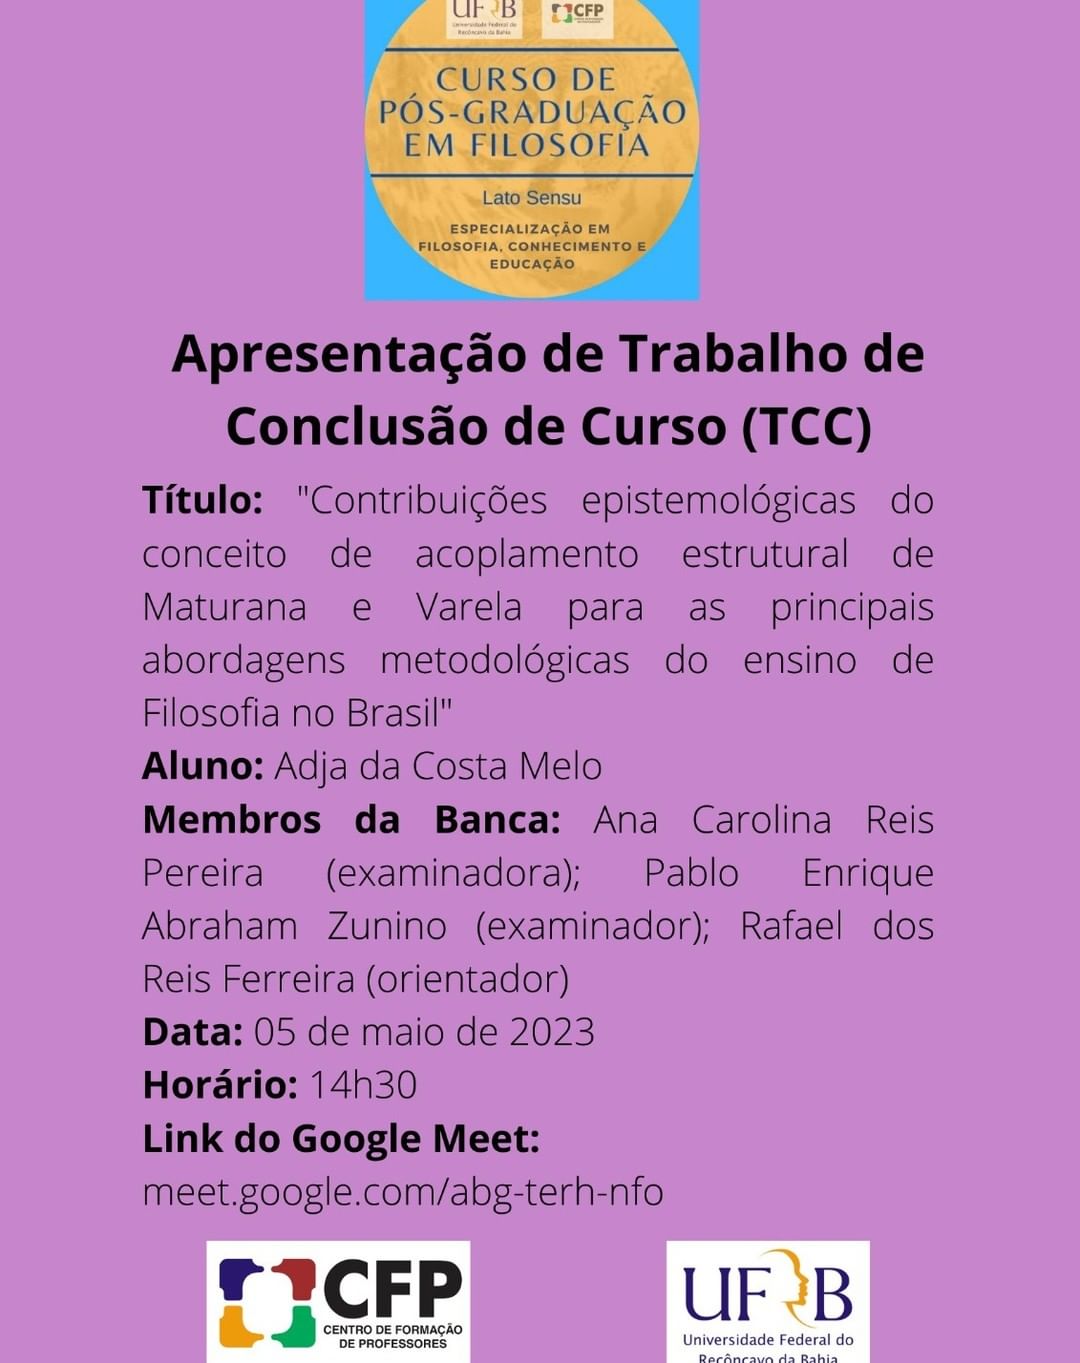 Apresentação de TCC: Contribuições epistemológicas do conceito de acoplamento estrutural de Maturana e Varela para as principais abordagens metodológicas do ensino de Filosofia no Brasil